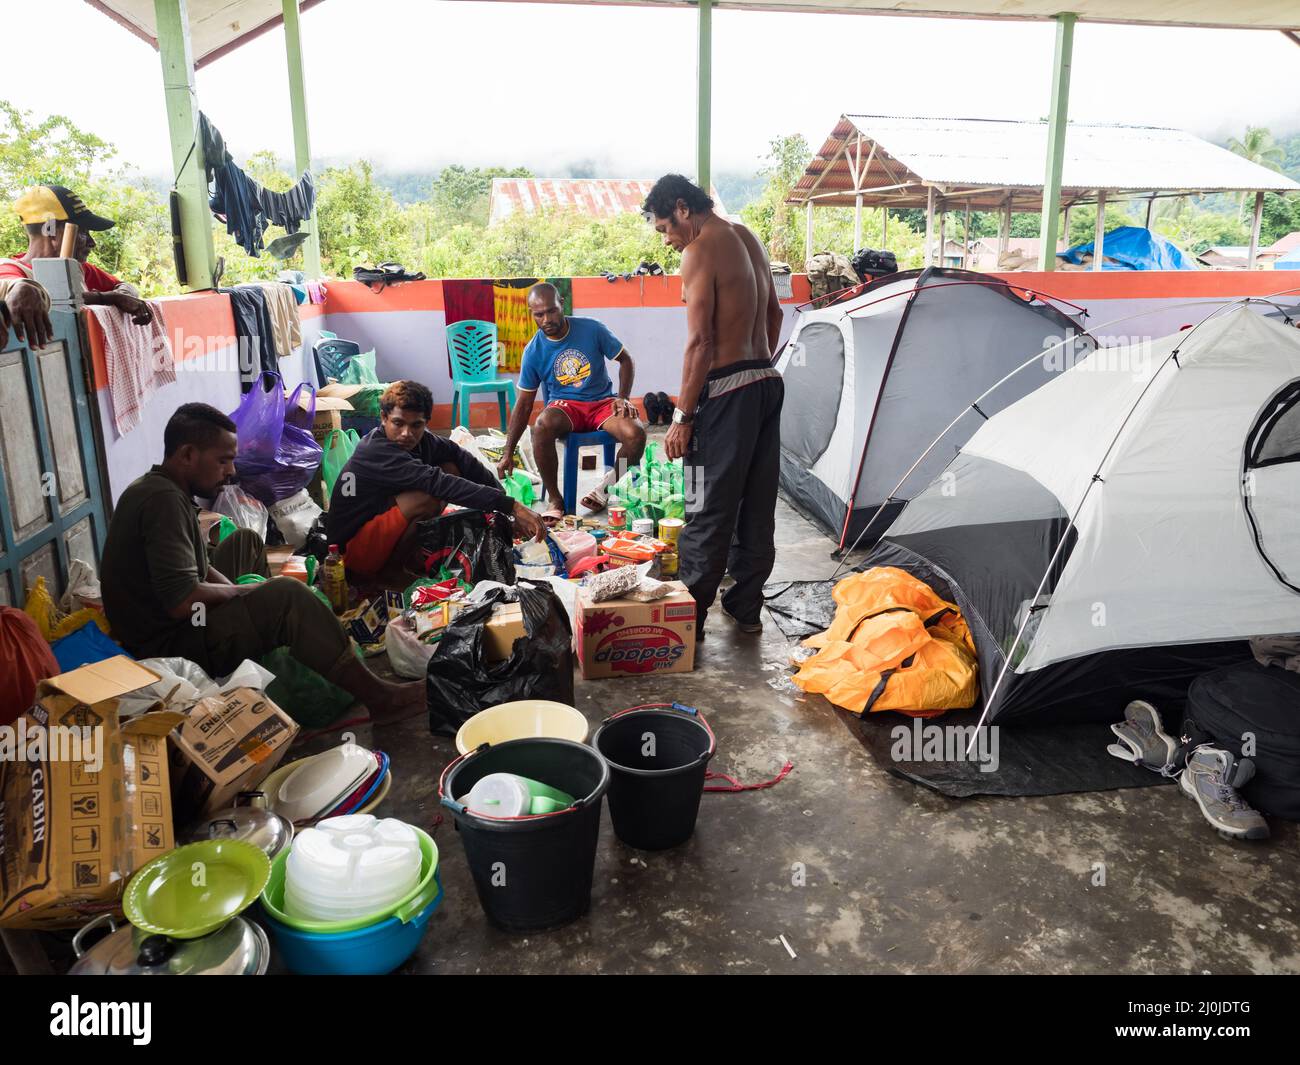 Kensi, Arguni, Indonesien - 06. Februar 2018: Zelte in einem Backsteinhaus ohne Mauern während einer Expedition im Regenwald Indonesiens. Bird's Head Penin Stockfoto